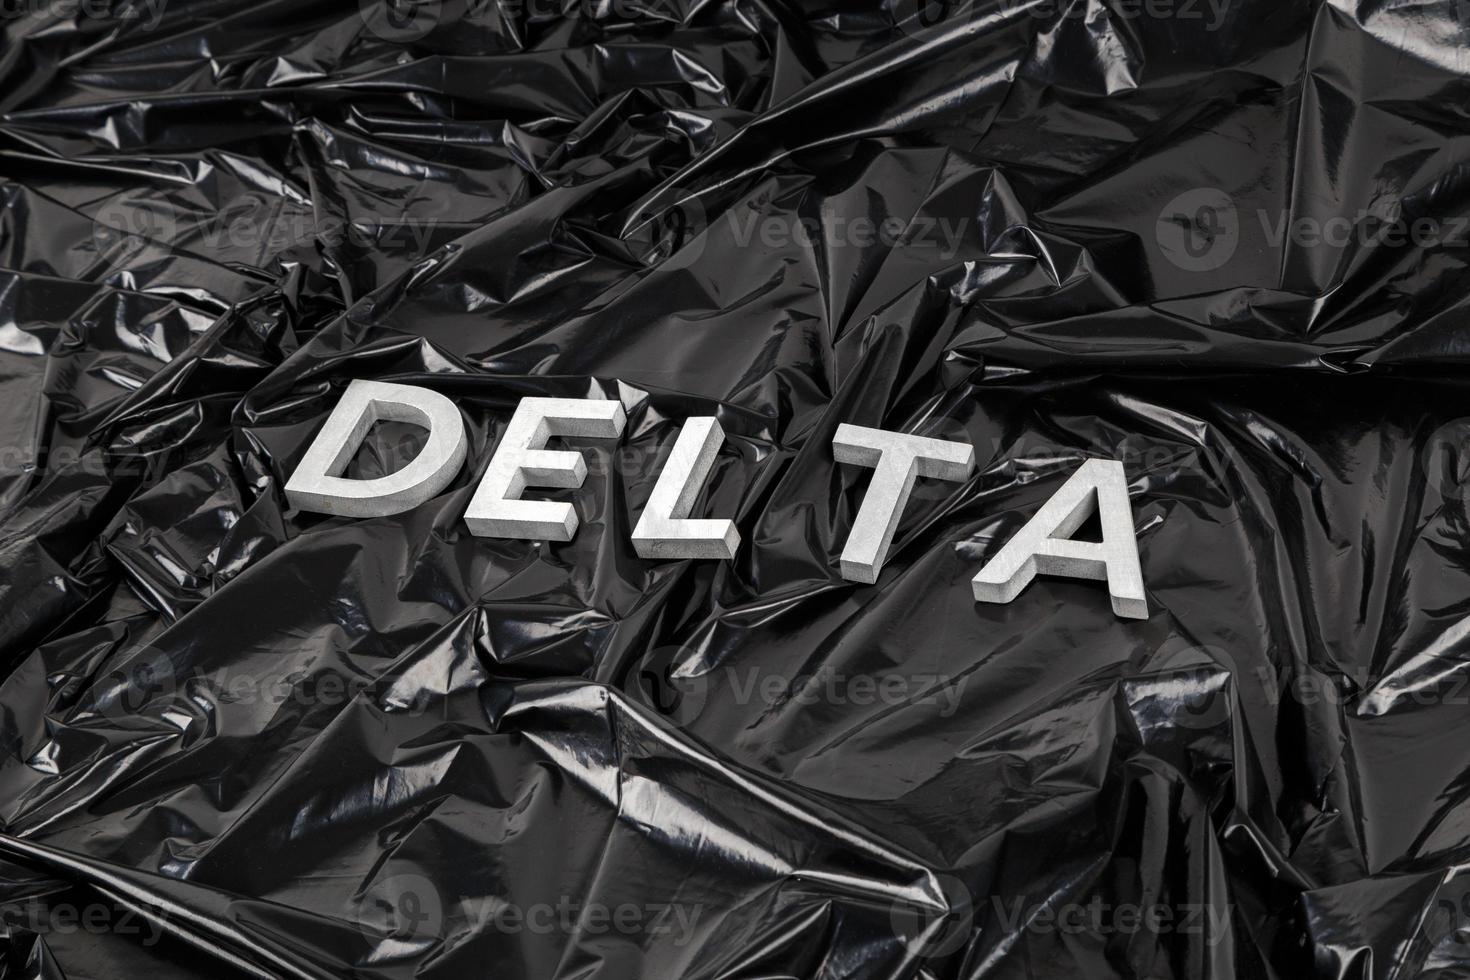 das wort delta mit silbernen metallbuchstaben auf zerknittertem schwarzem plastiktütenhintergrund in diagonaler perspektive foto